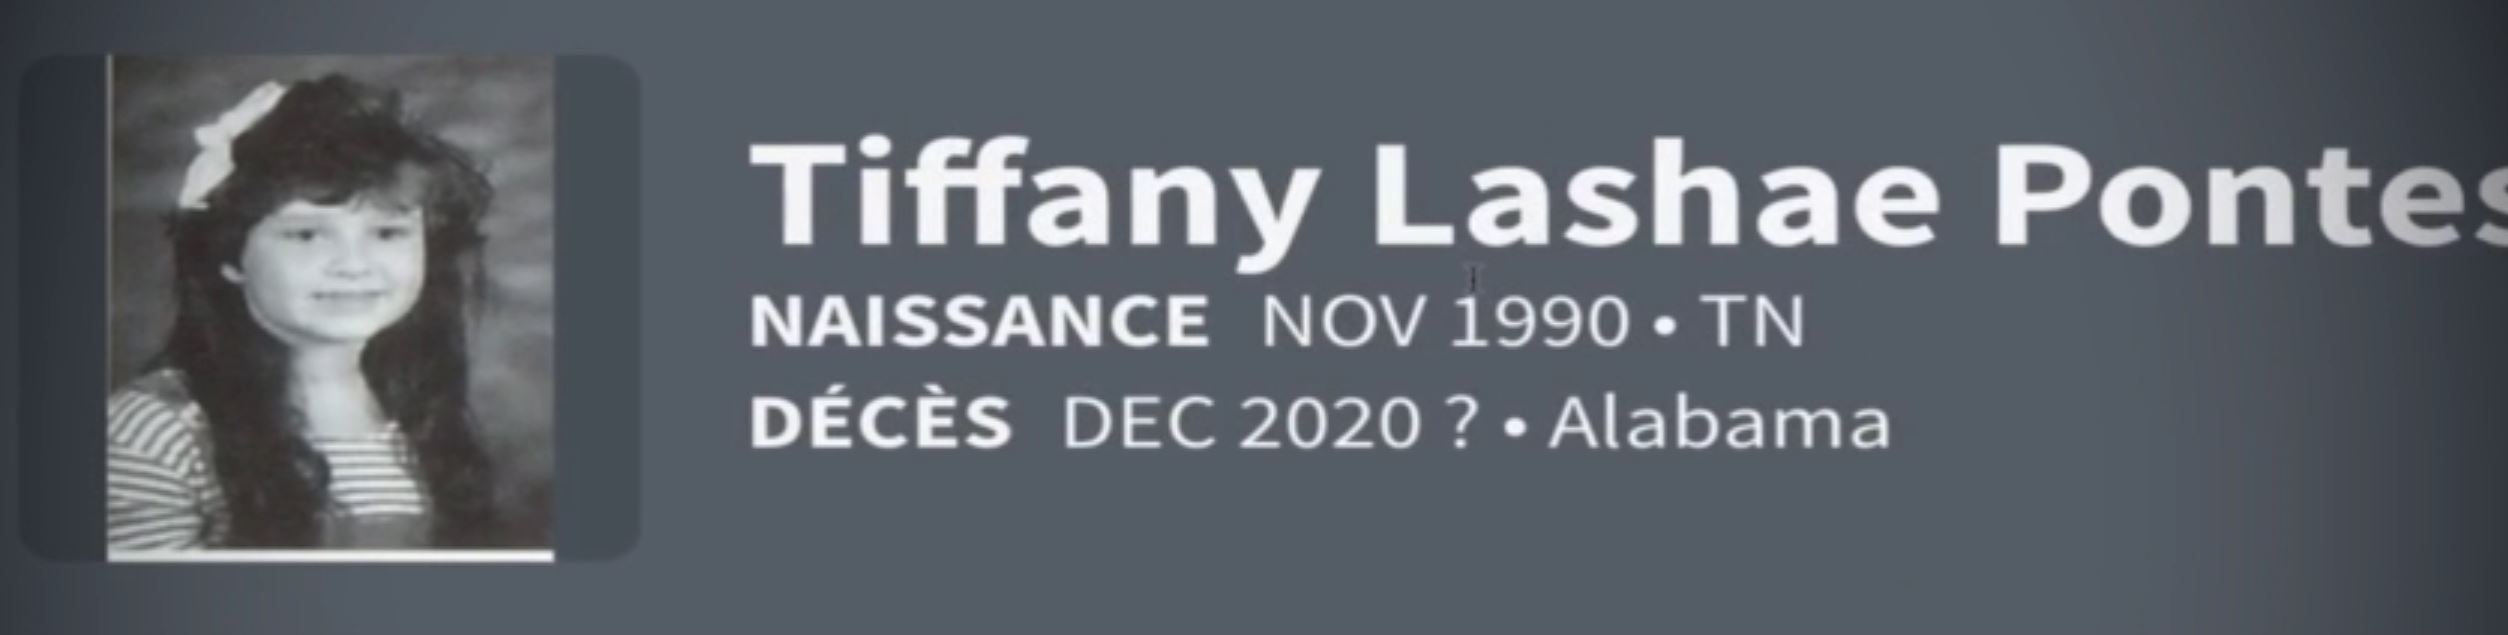 tiffany-lashae-pontes-deces-decembre-2020-en-alabama.JPG